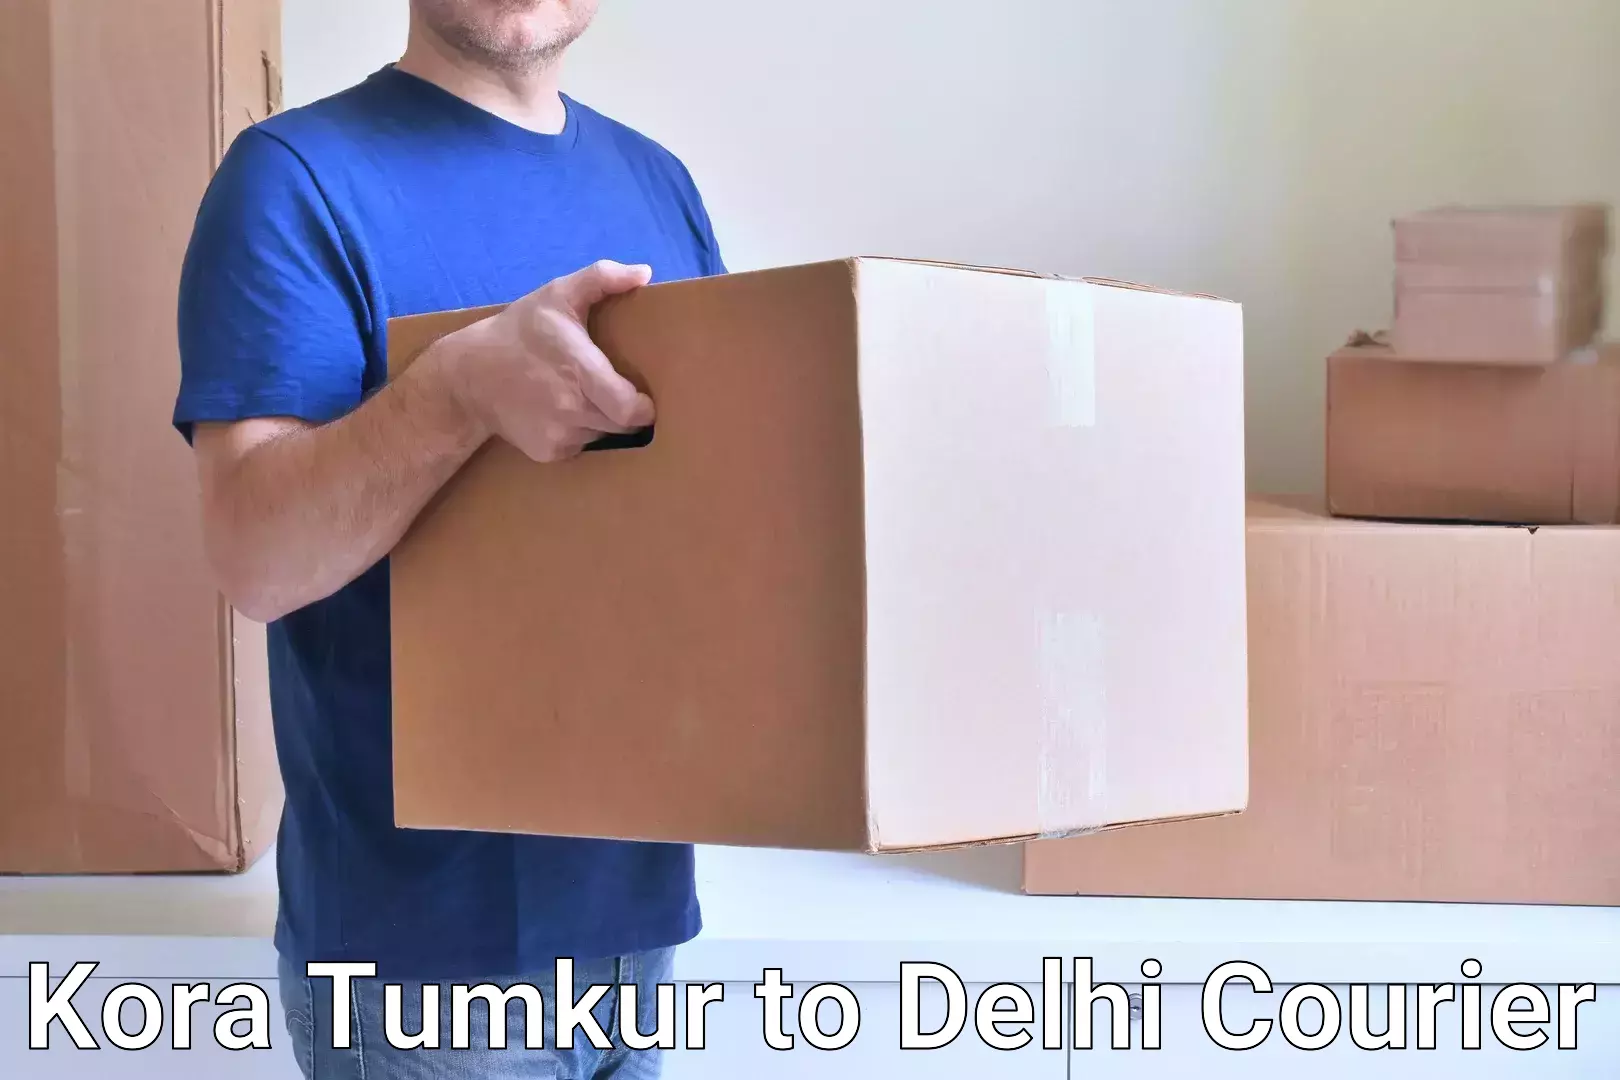 Ground shipping Kora Tumkur to Jamia Millia Islamia New Delhi